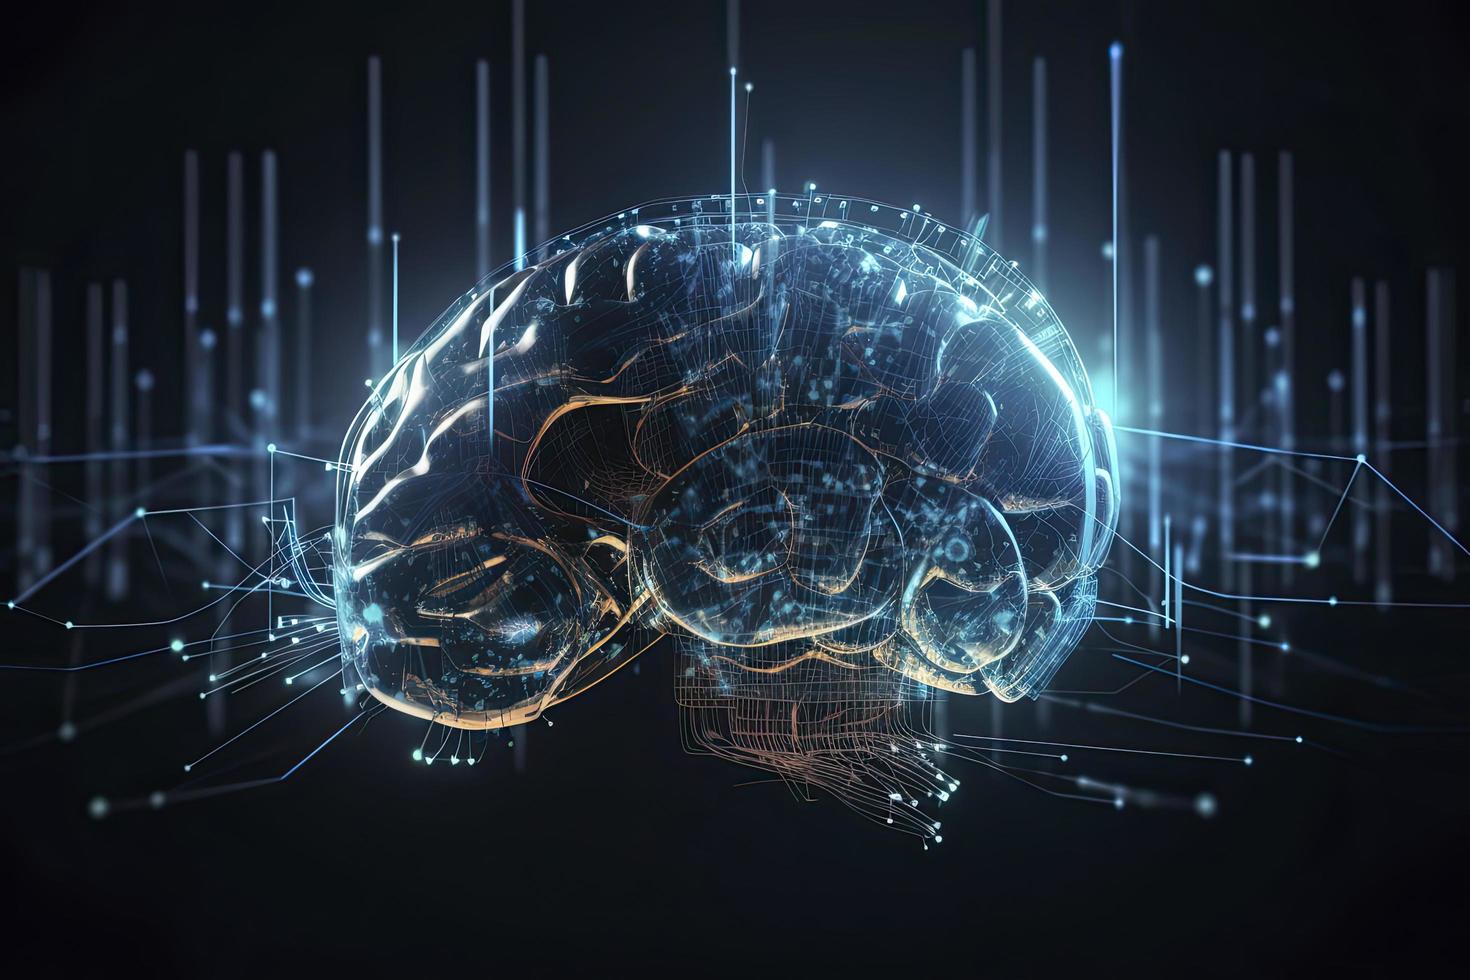 künstlich Intelligenz Digital Konzept mit abstrakt Gehirne foto